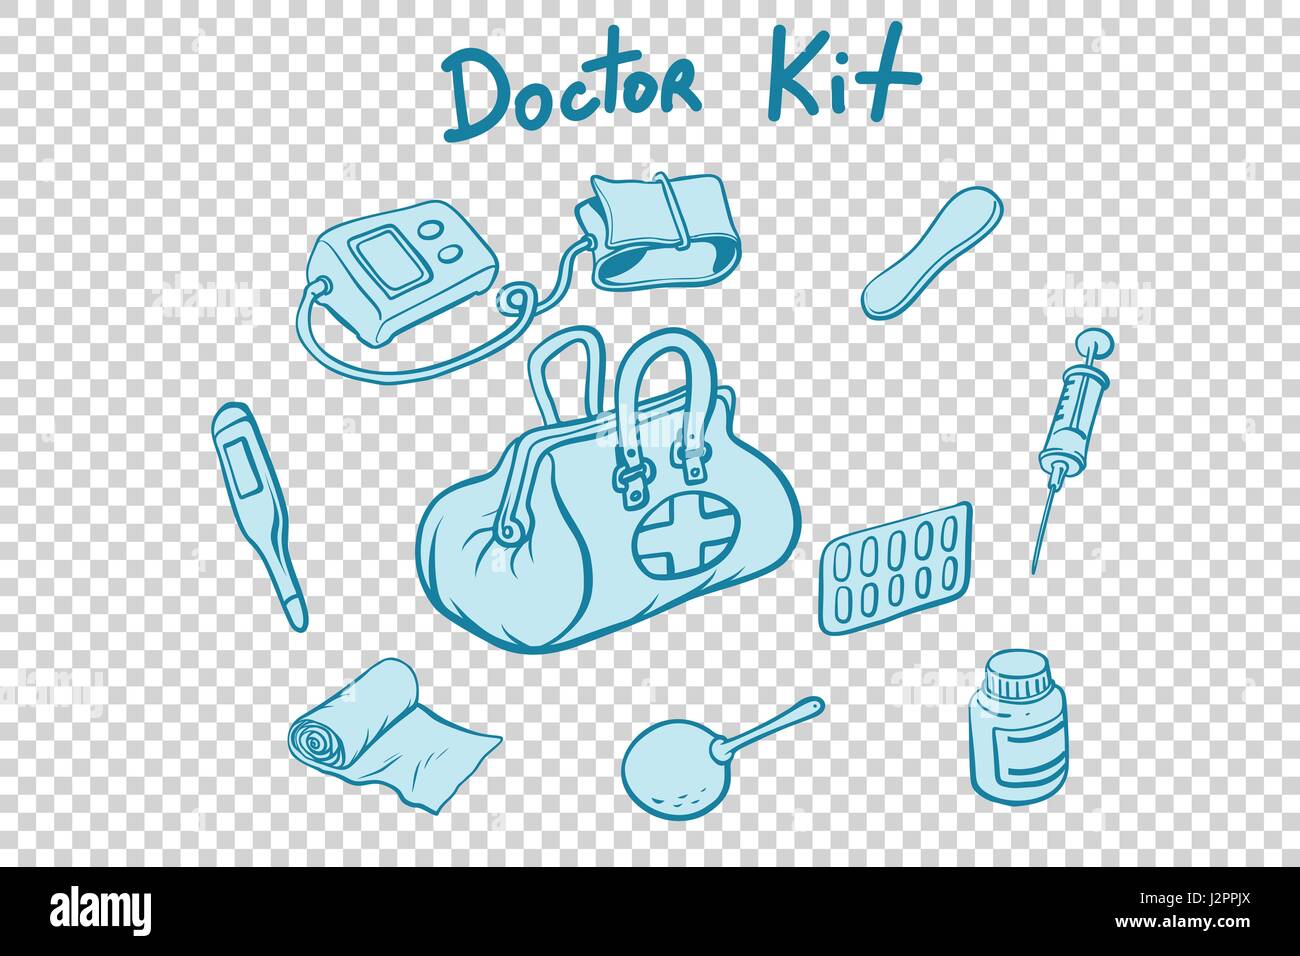 Arzt Kit medizinische Instrumente und Medikamente Stock Vektor